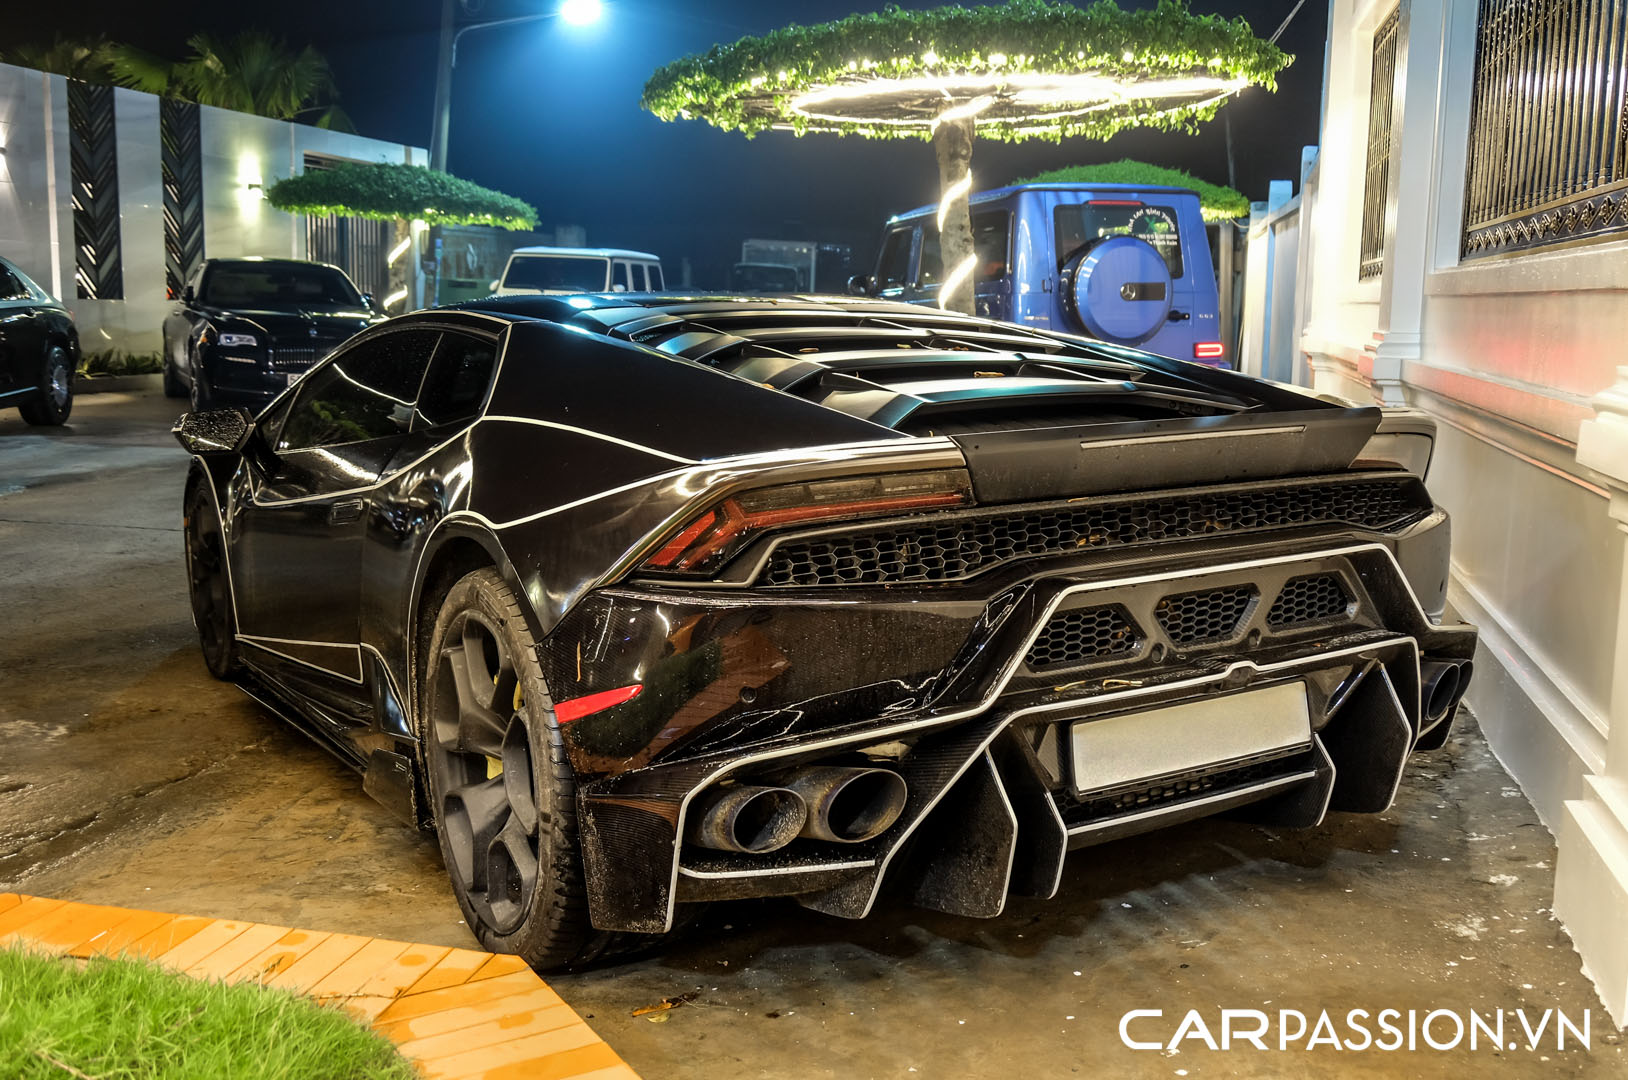 CP-Bộ đôi Lamborghini Huracan độ độc đáo32.jpg